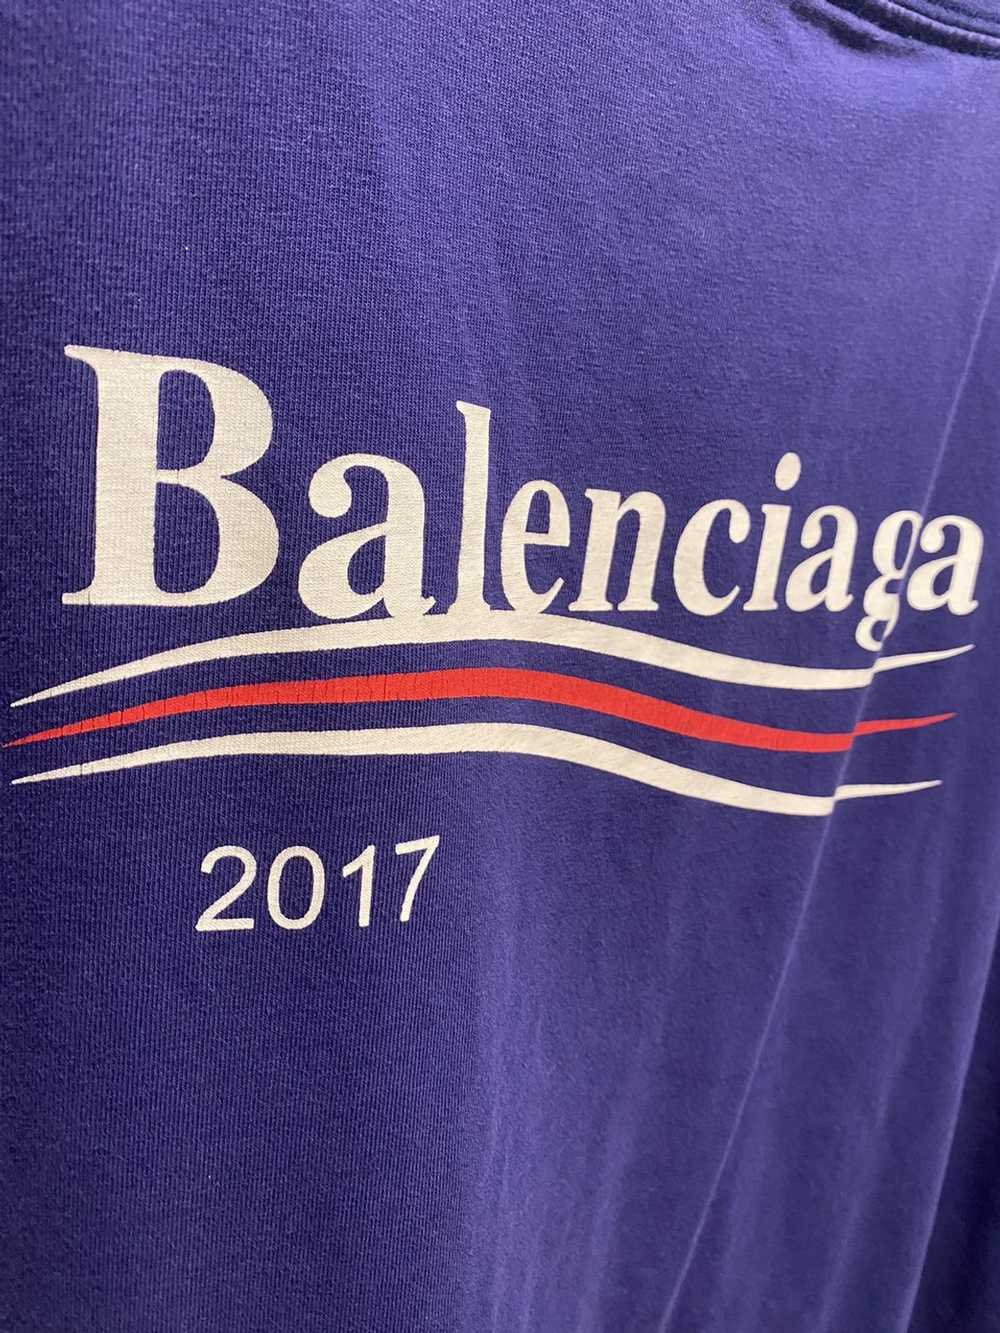 Balenciaga Balenciaga Campaign Logo Tee - image 3